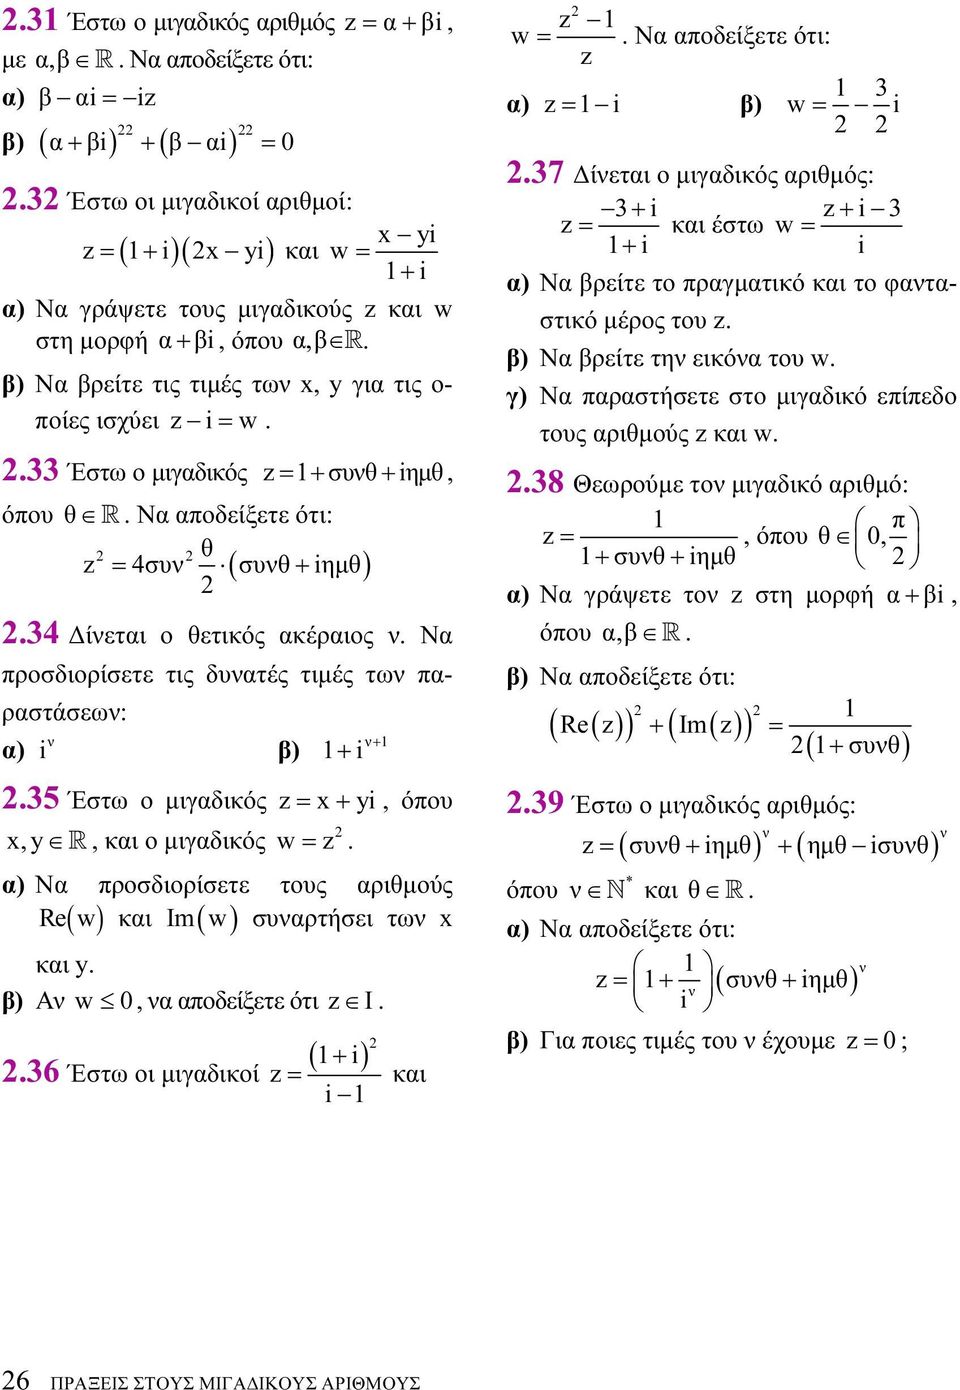 προσδιορίσετε τις δυατές τιμές τω παραστάσεω: α) β) + + 35 Έστω ο μιγαδικός = x+ y, όπου x,y R, και ο μιγαδικός w = α) Να προσδιορίσετε τους αριθμούς Im w συαρτήσει τω x Re( w ) και ( ) και y β) Α w